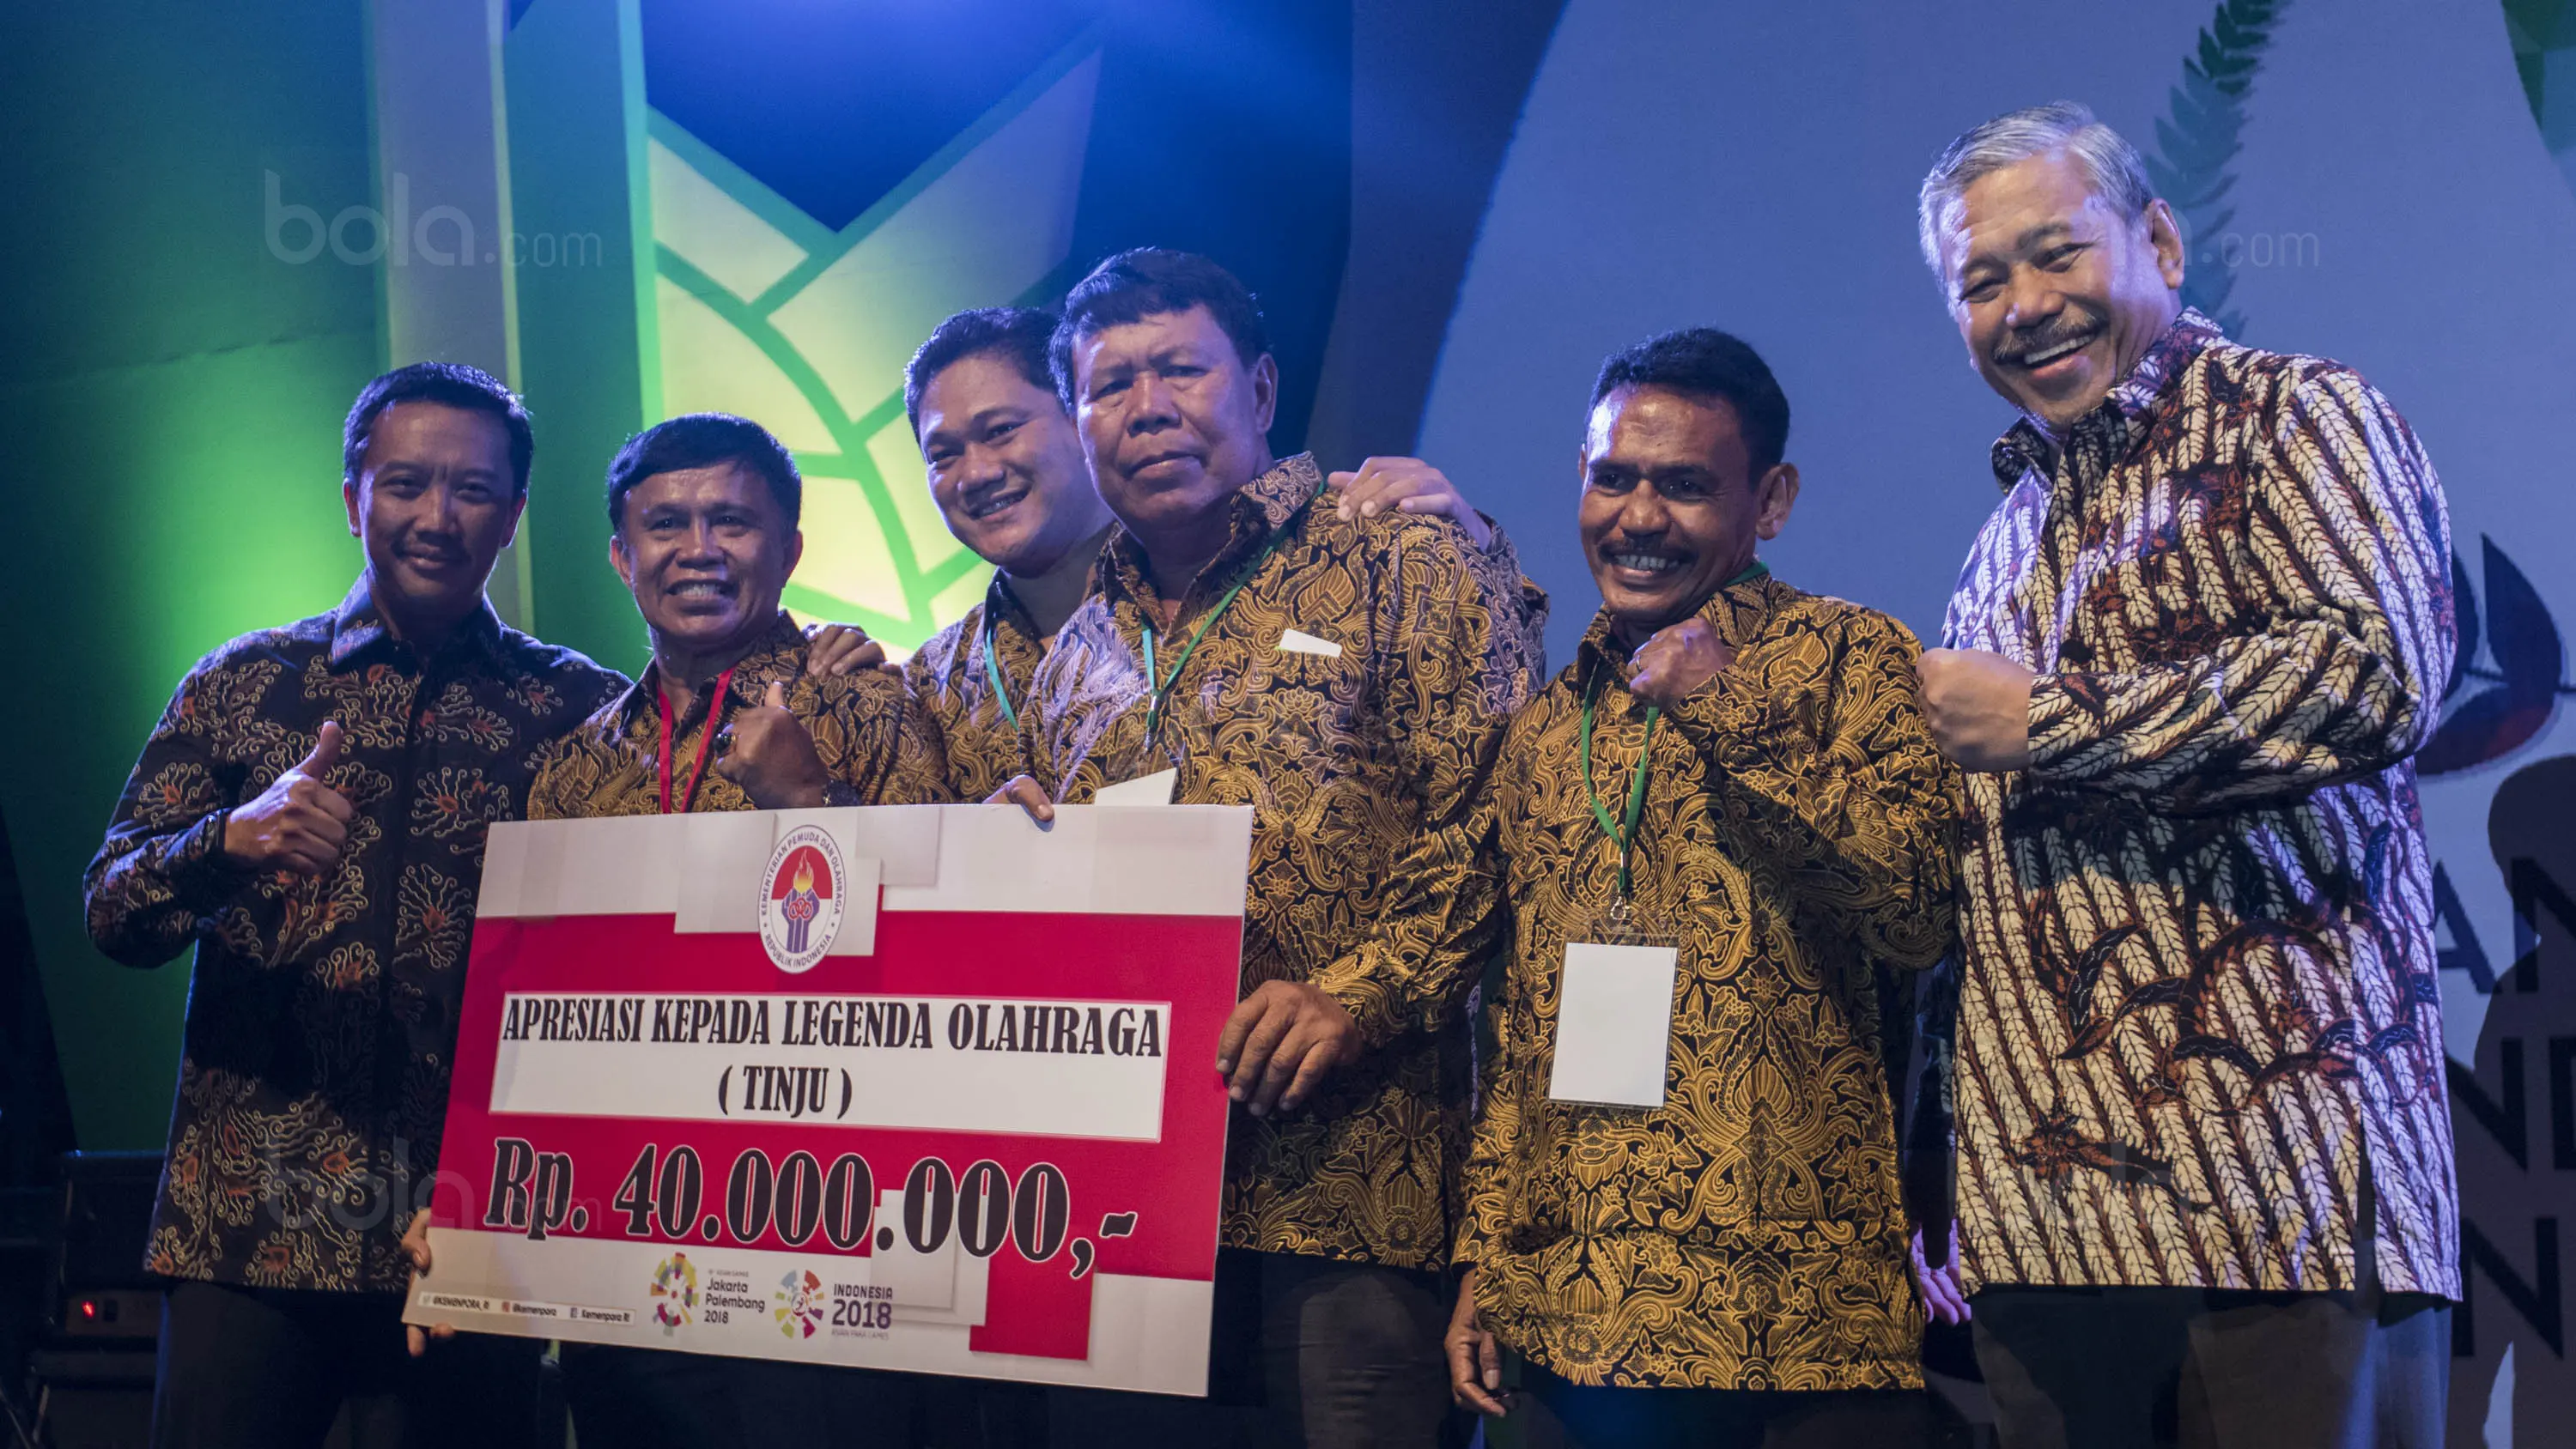 Legenda tinju Indonesia Syamsul Anwar (ketiga dari kanan). (Bola.com/Vitalis Yogi Trisna)